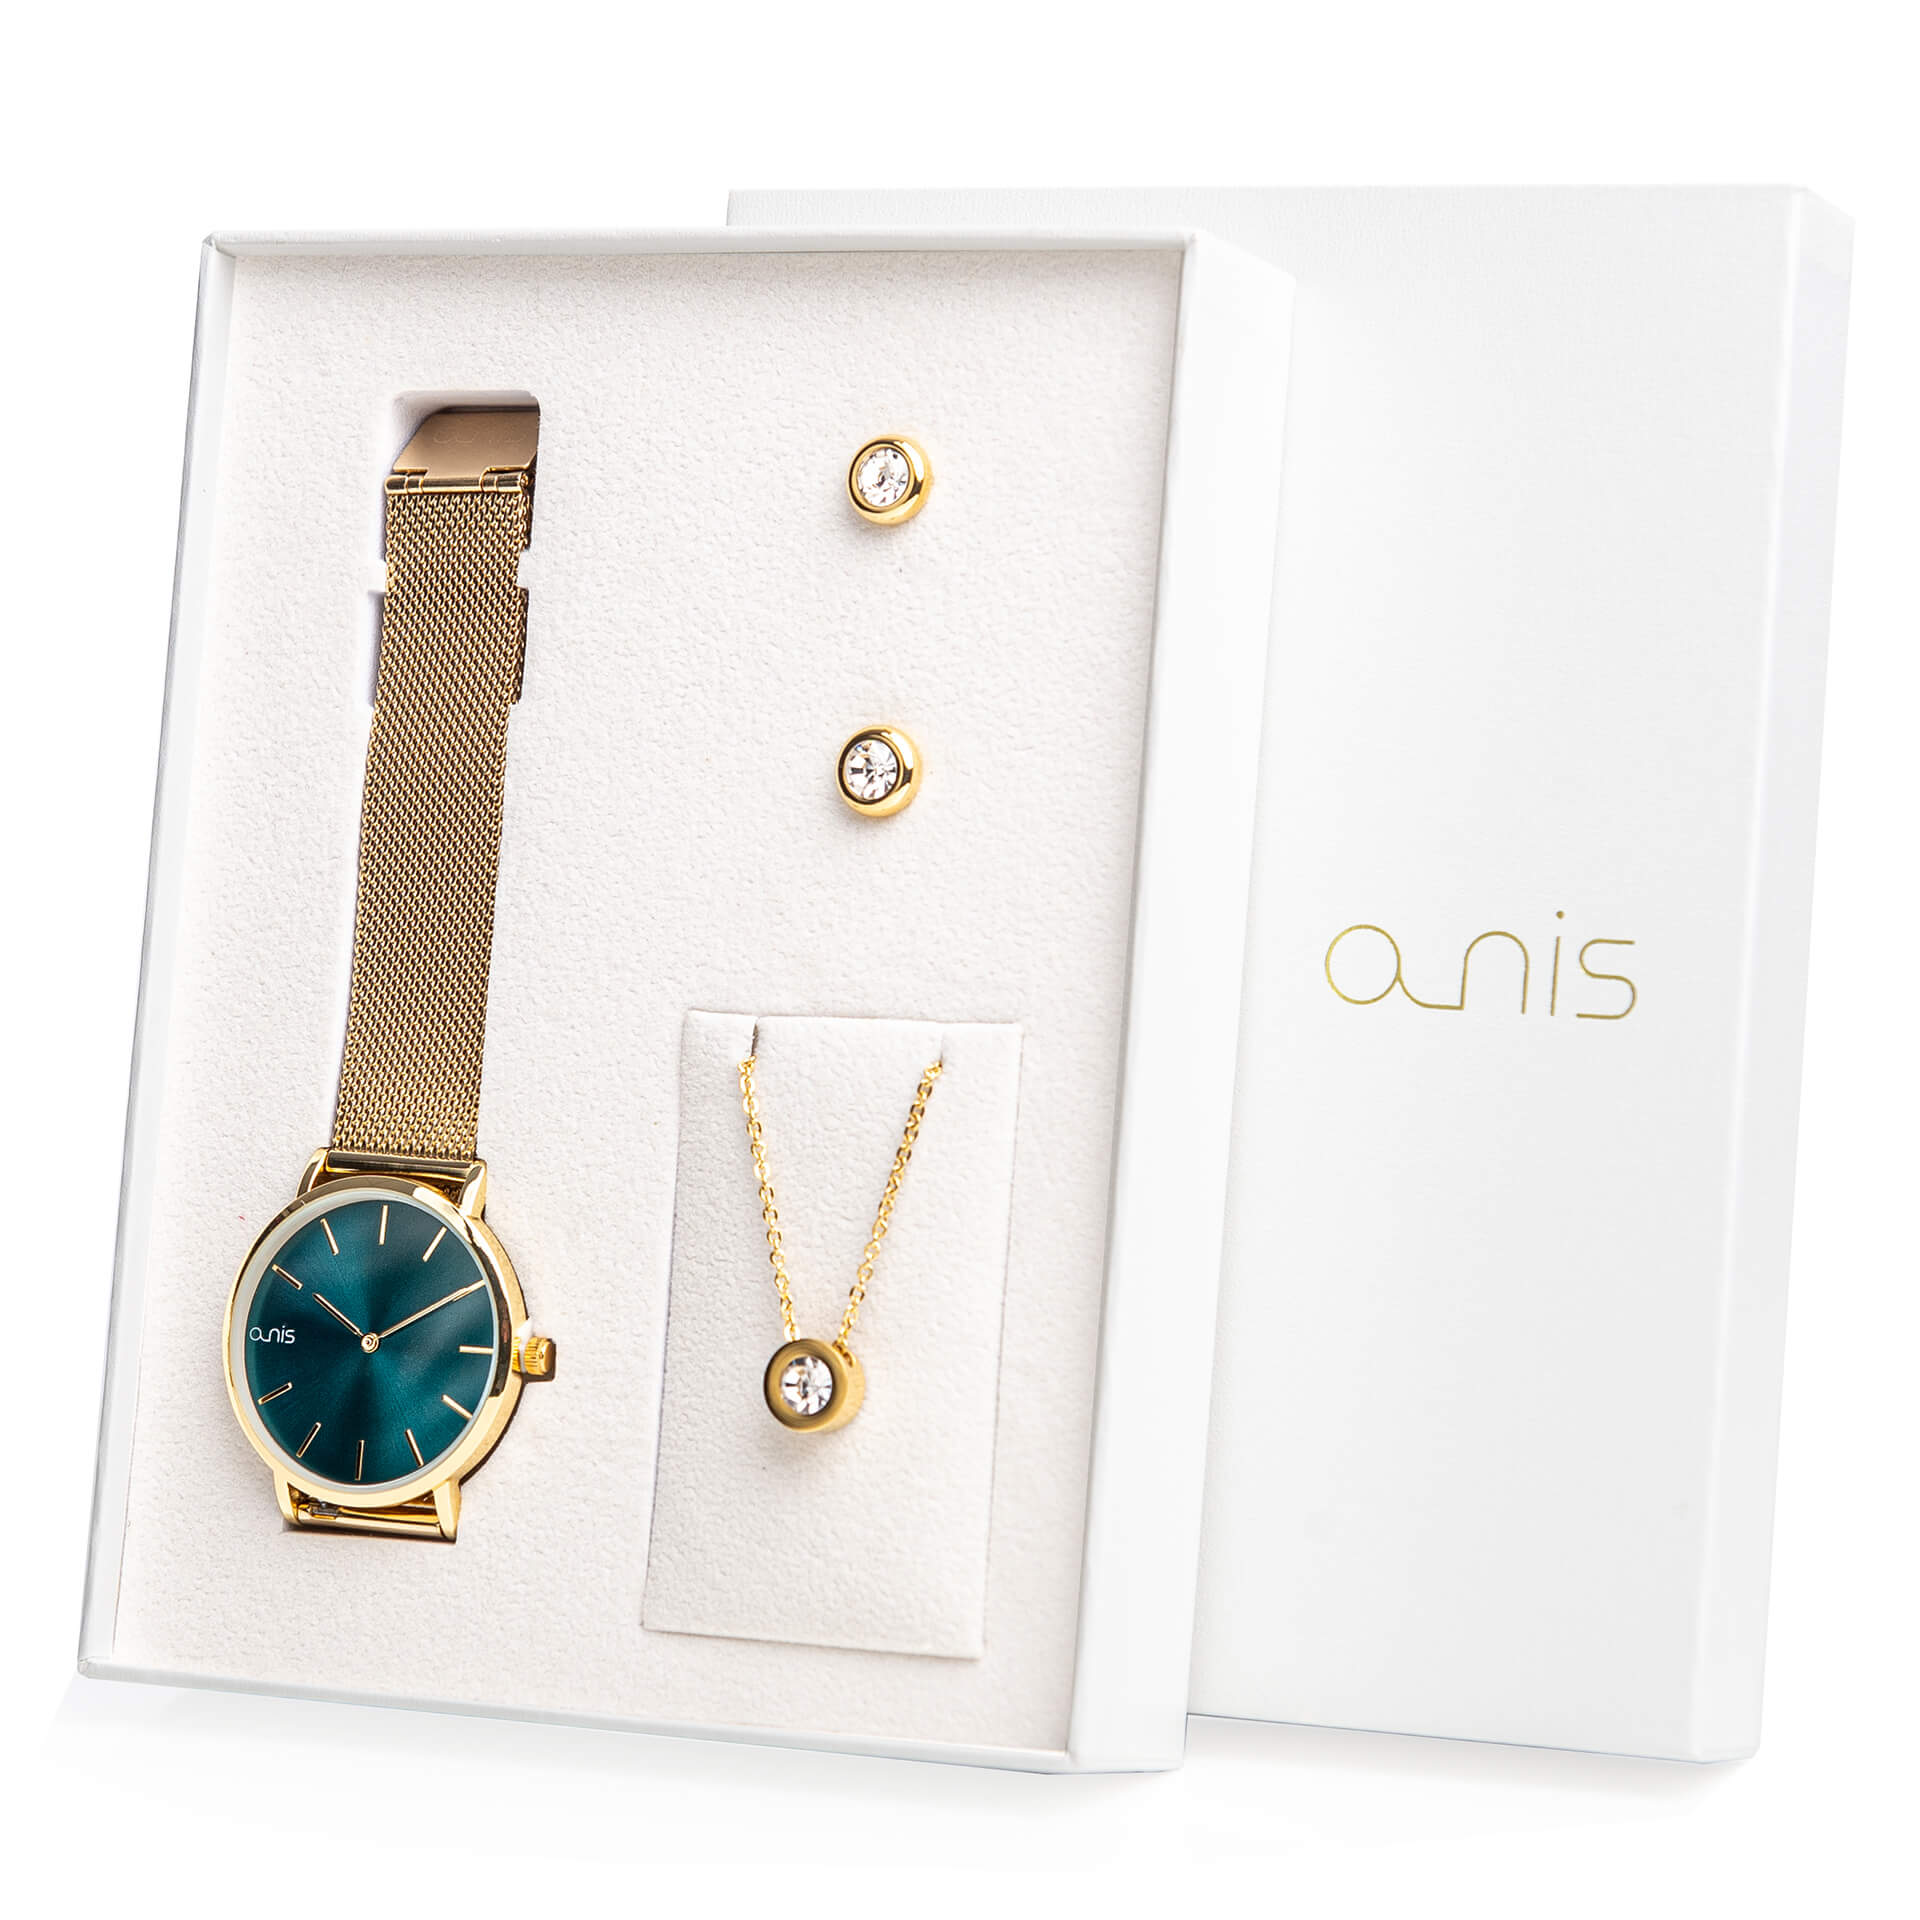 A-NIS Set hodinek, náhrdelníku a náušnic AS100-22